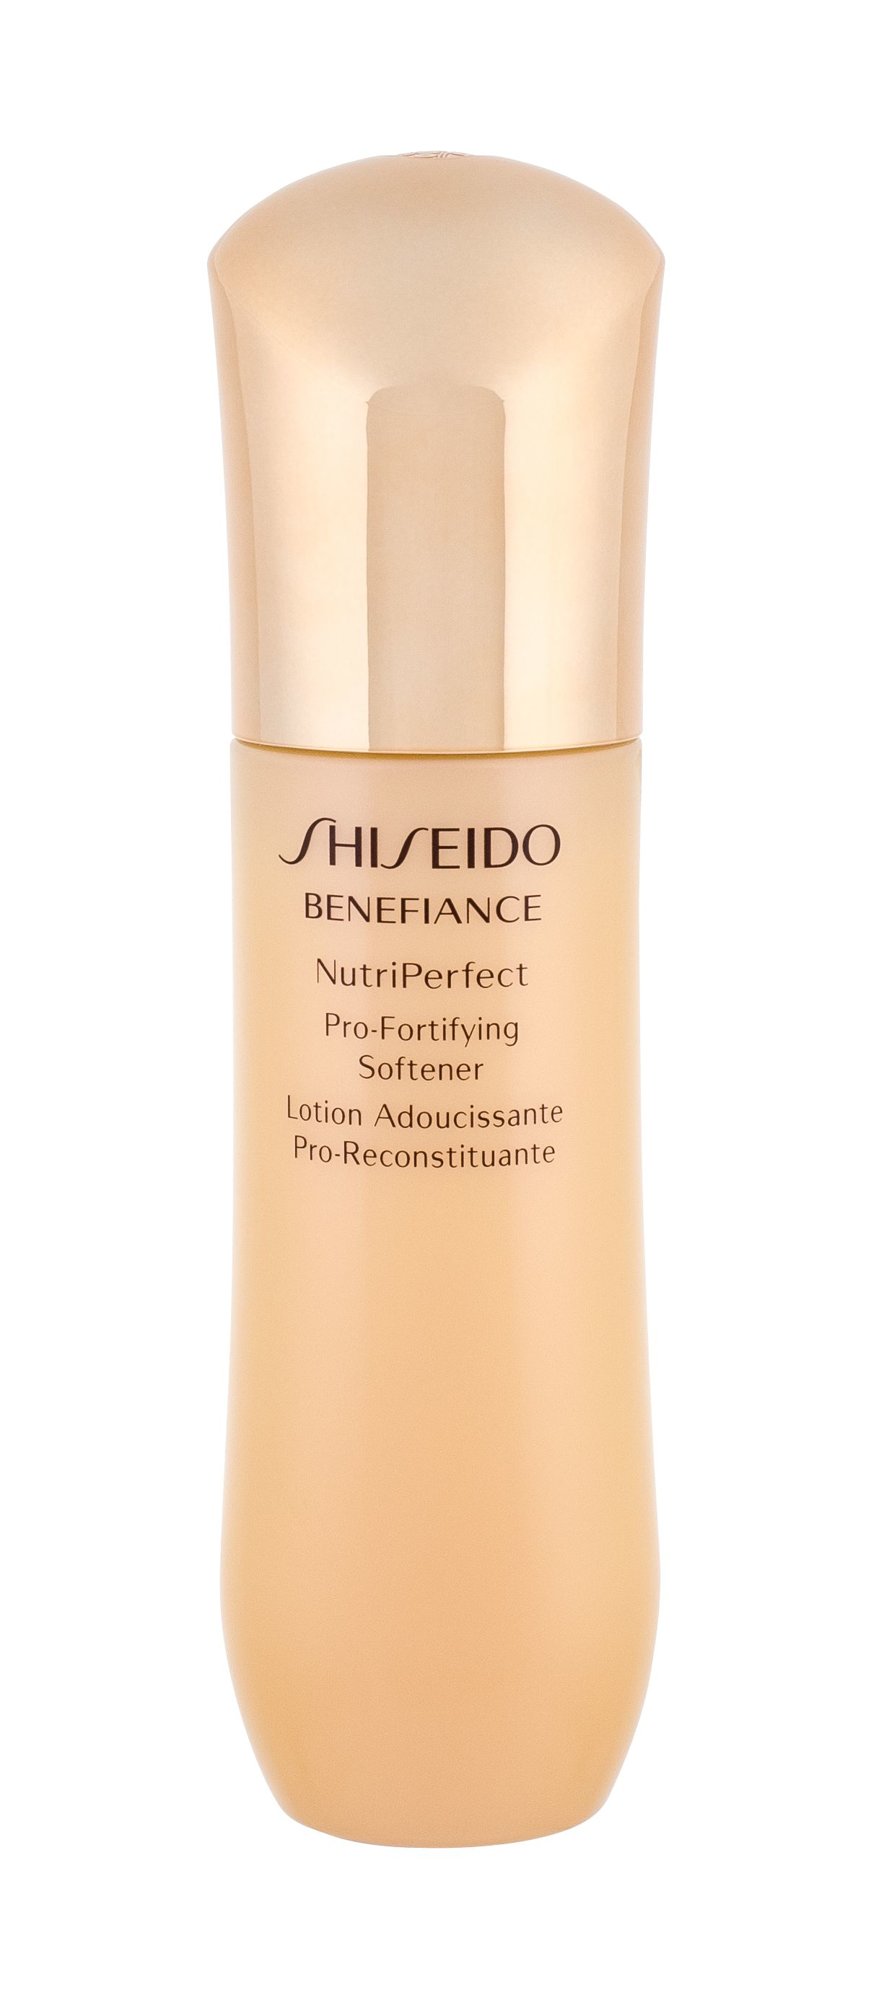 Shiseido Benefiance NutriPerfect 150ml valomasis vanduo veidui